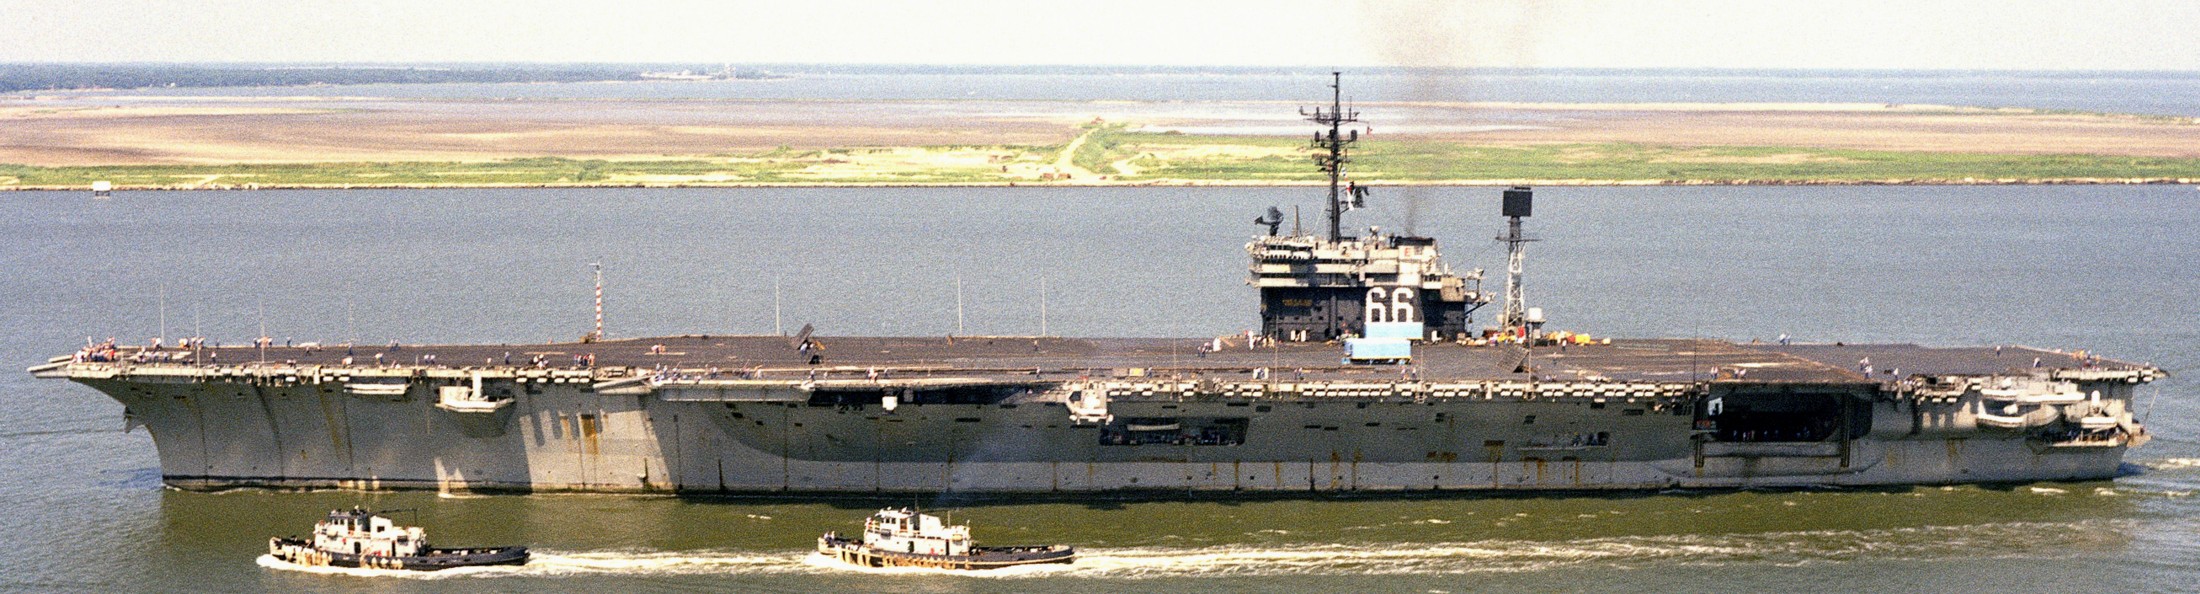 cv-66 uss america kitty hawk class aircraft carrier us navy 72